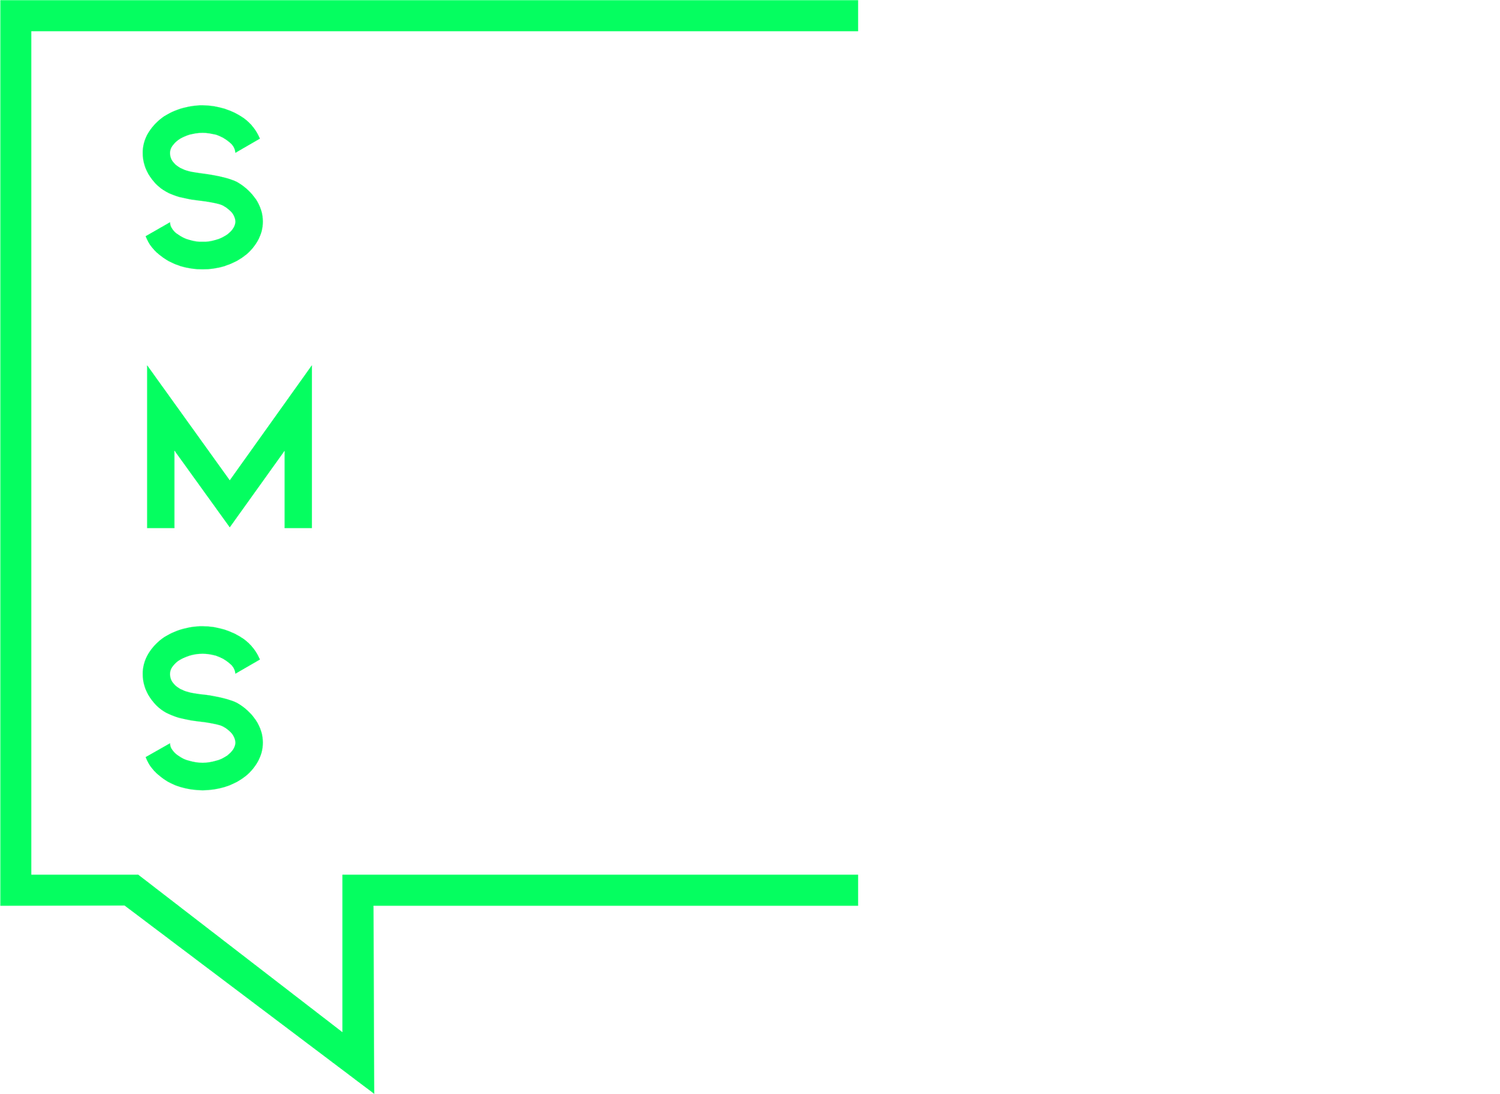 SIP MEDIA SOLUTIONS